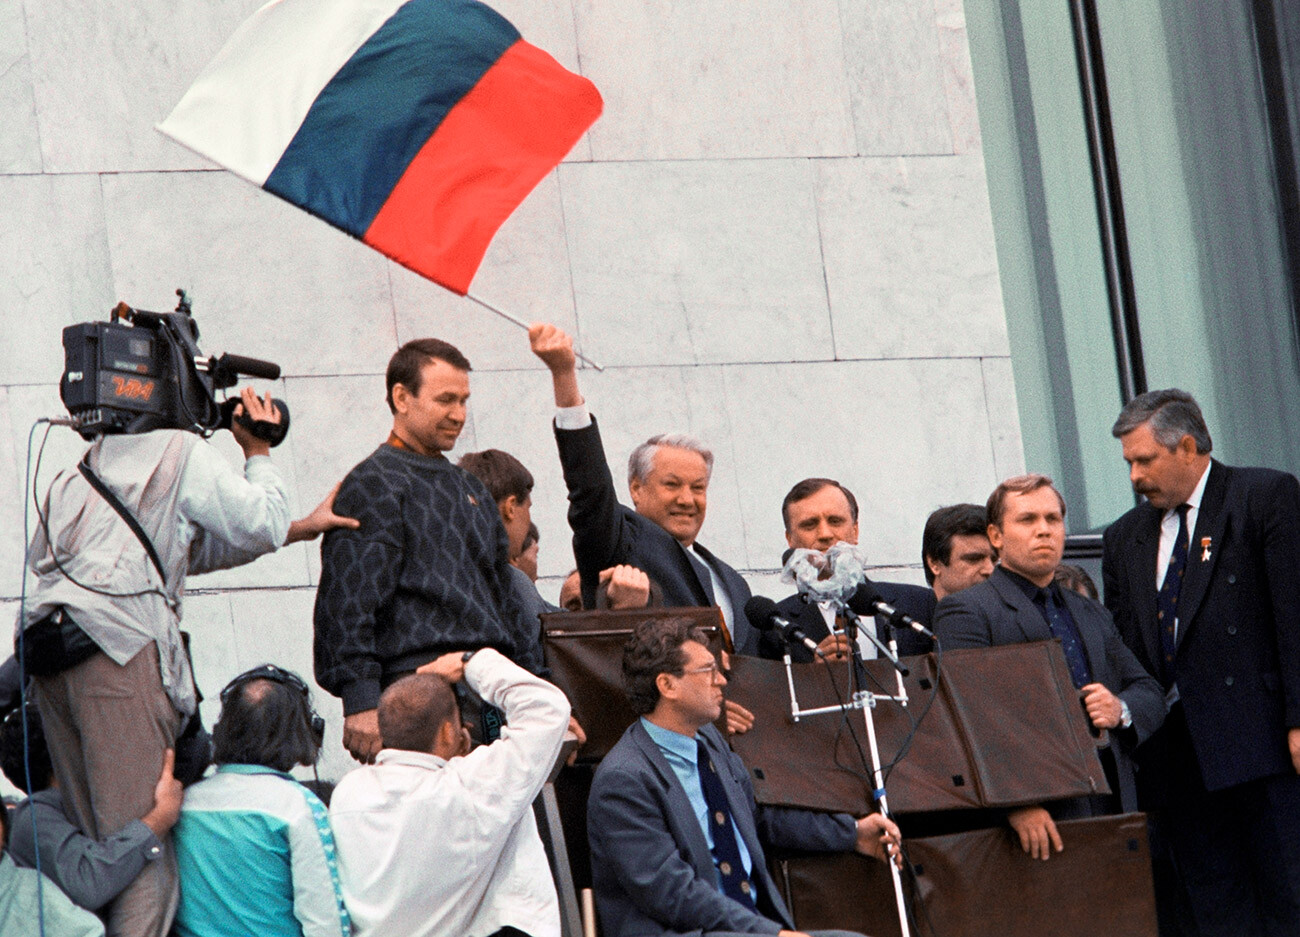 Митинг у Белого дома в августе 1991 года. Президент России Борис Ельцин с флагом